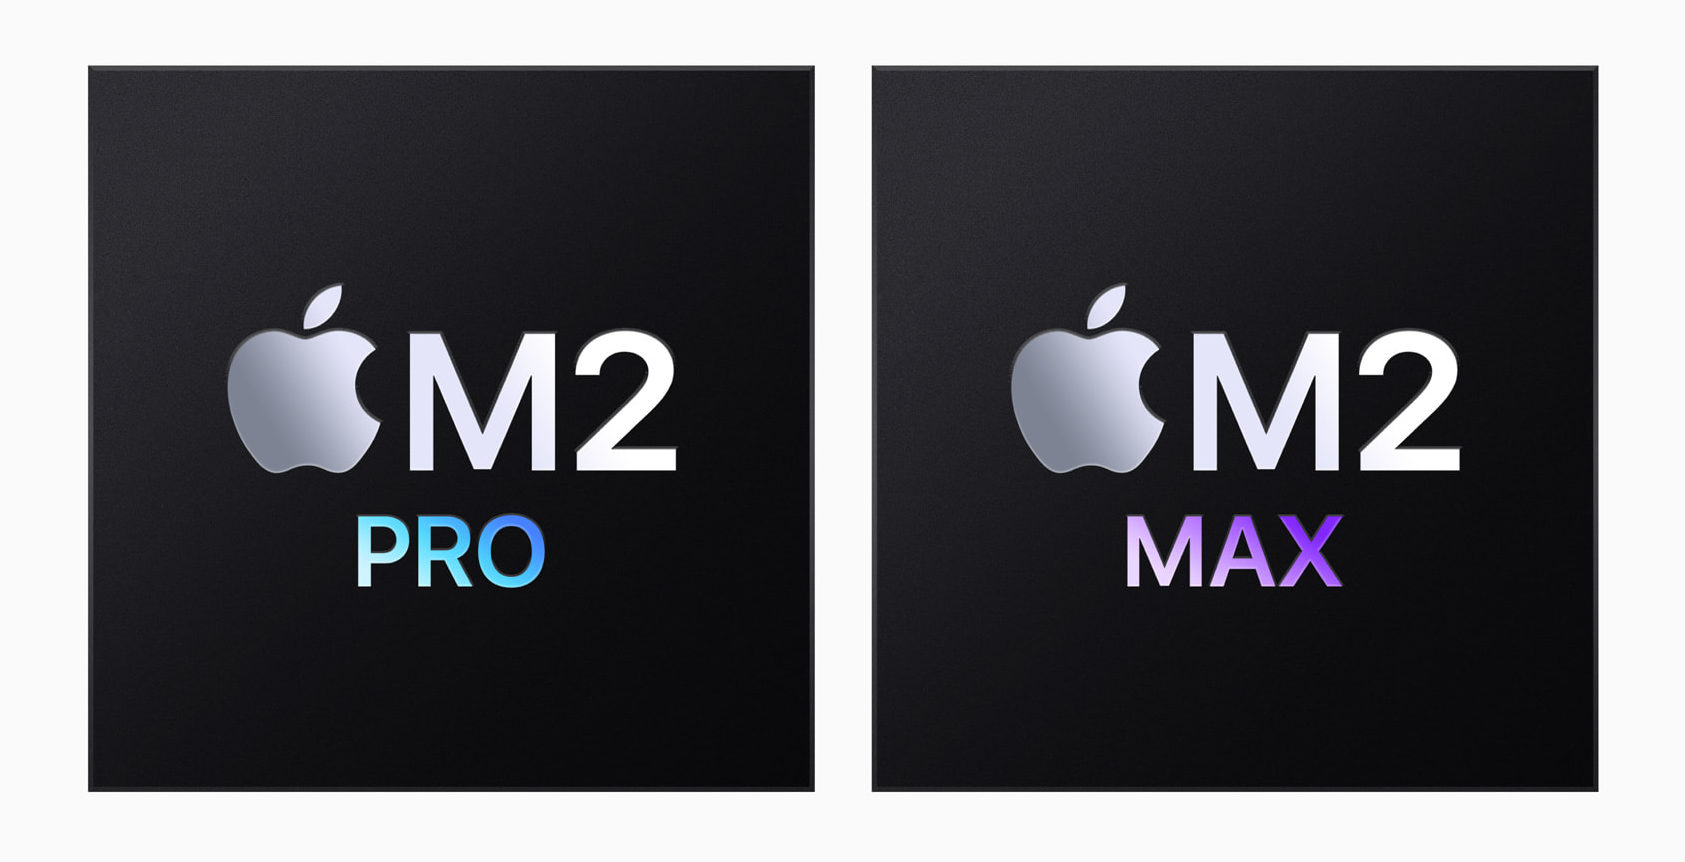 Tanto M2 Pro como M2 Max son chips de última generación que llevan el revolucionario rendimiento y consumo eficiente del chip de Apple a nuevas cotas